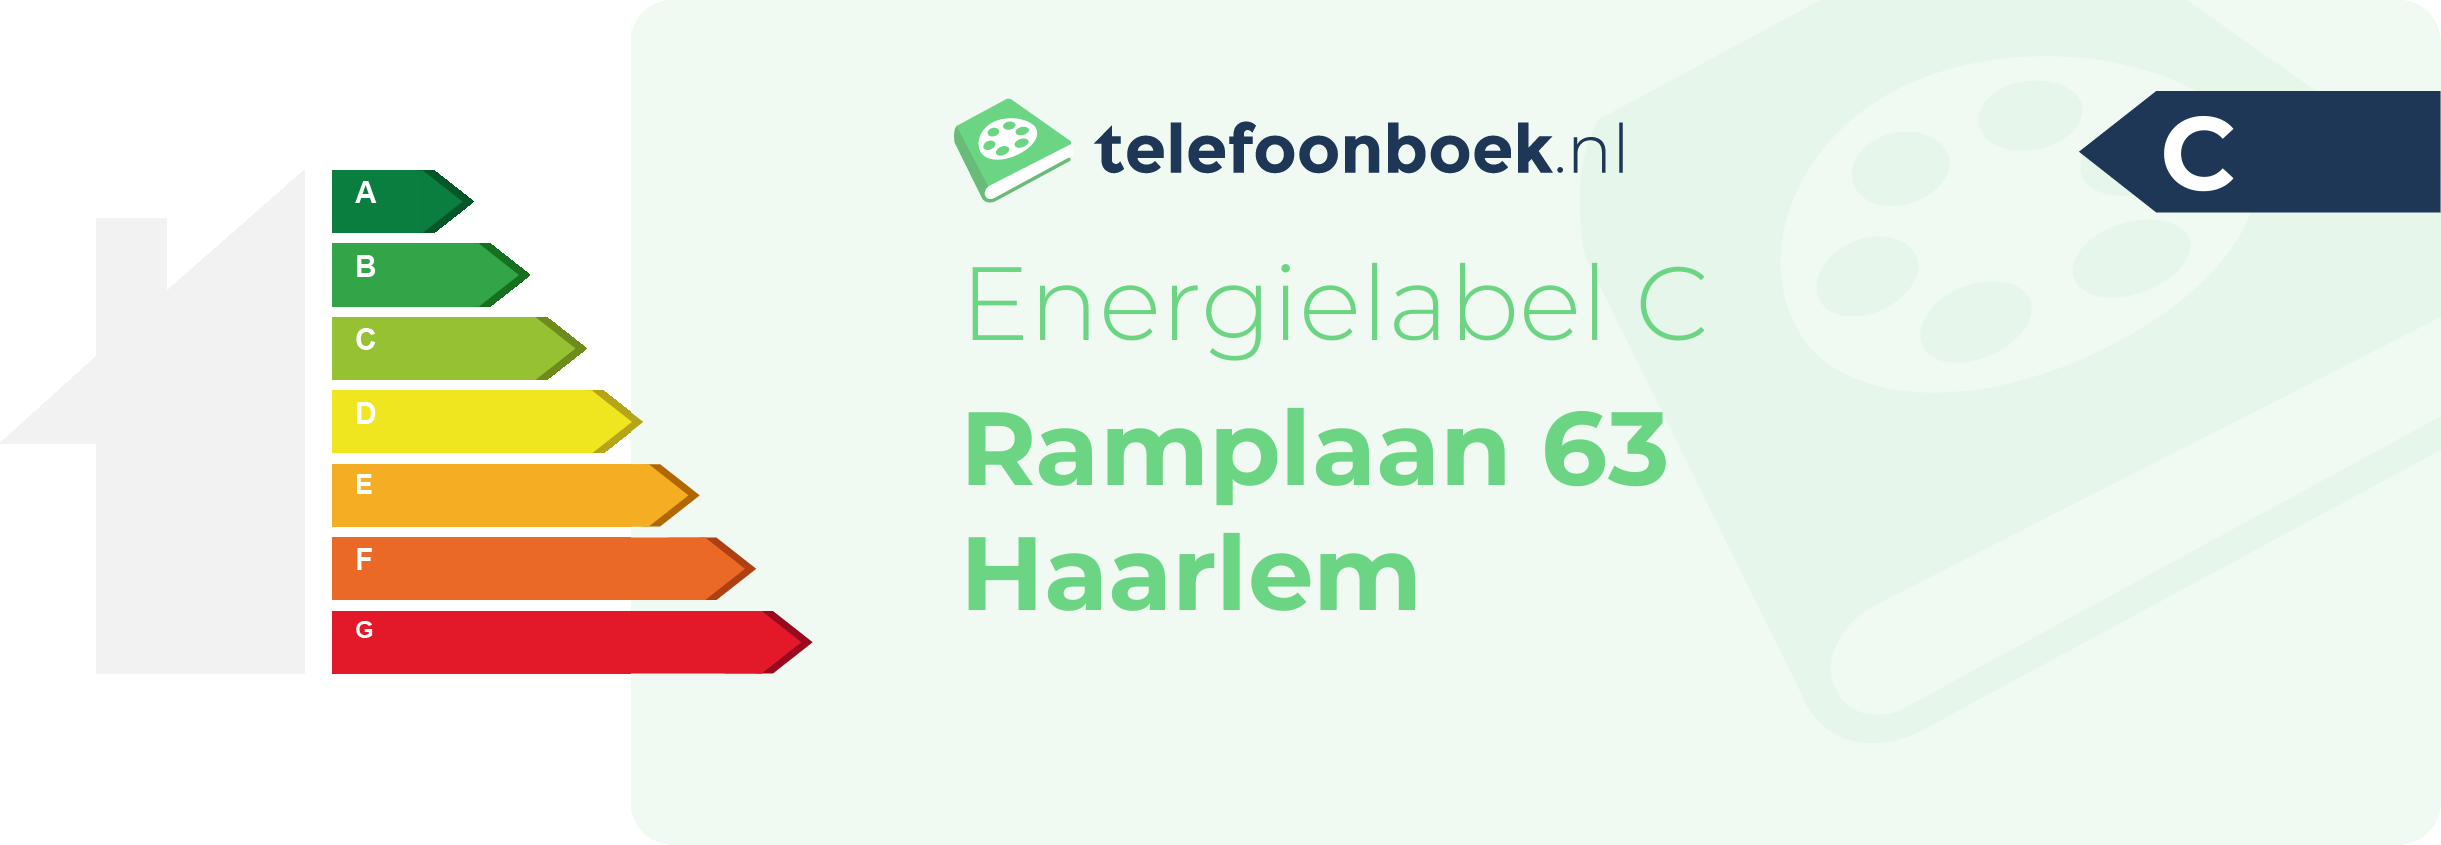 Energielabel Ramplaan 63 Haarlem